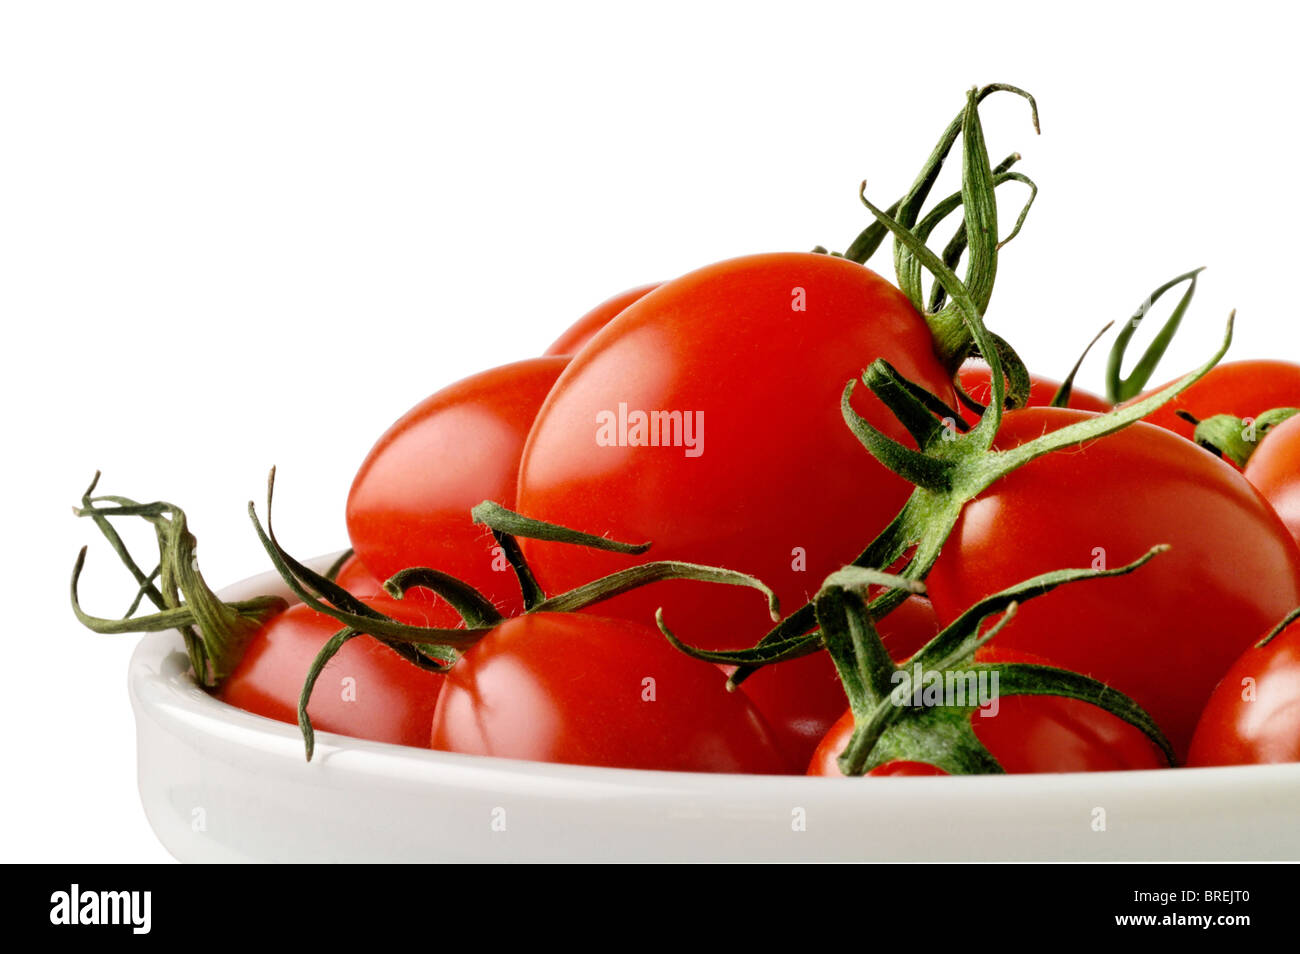 Plat avec les tomates cerise Avec clipping path Banque D'Images